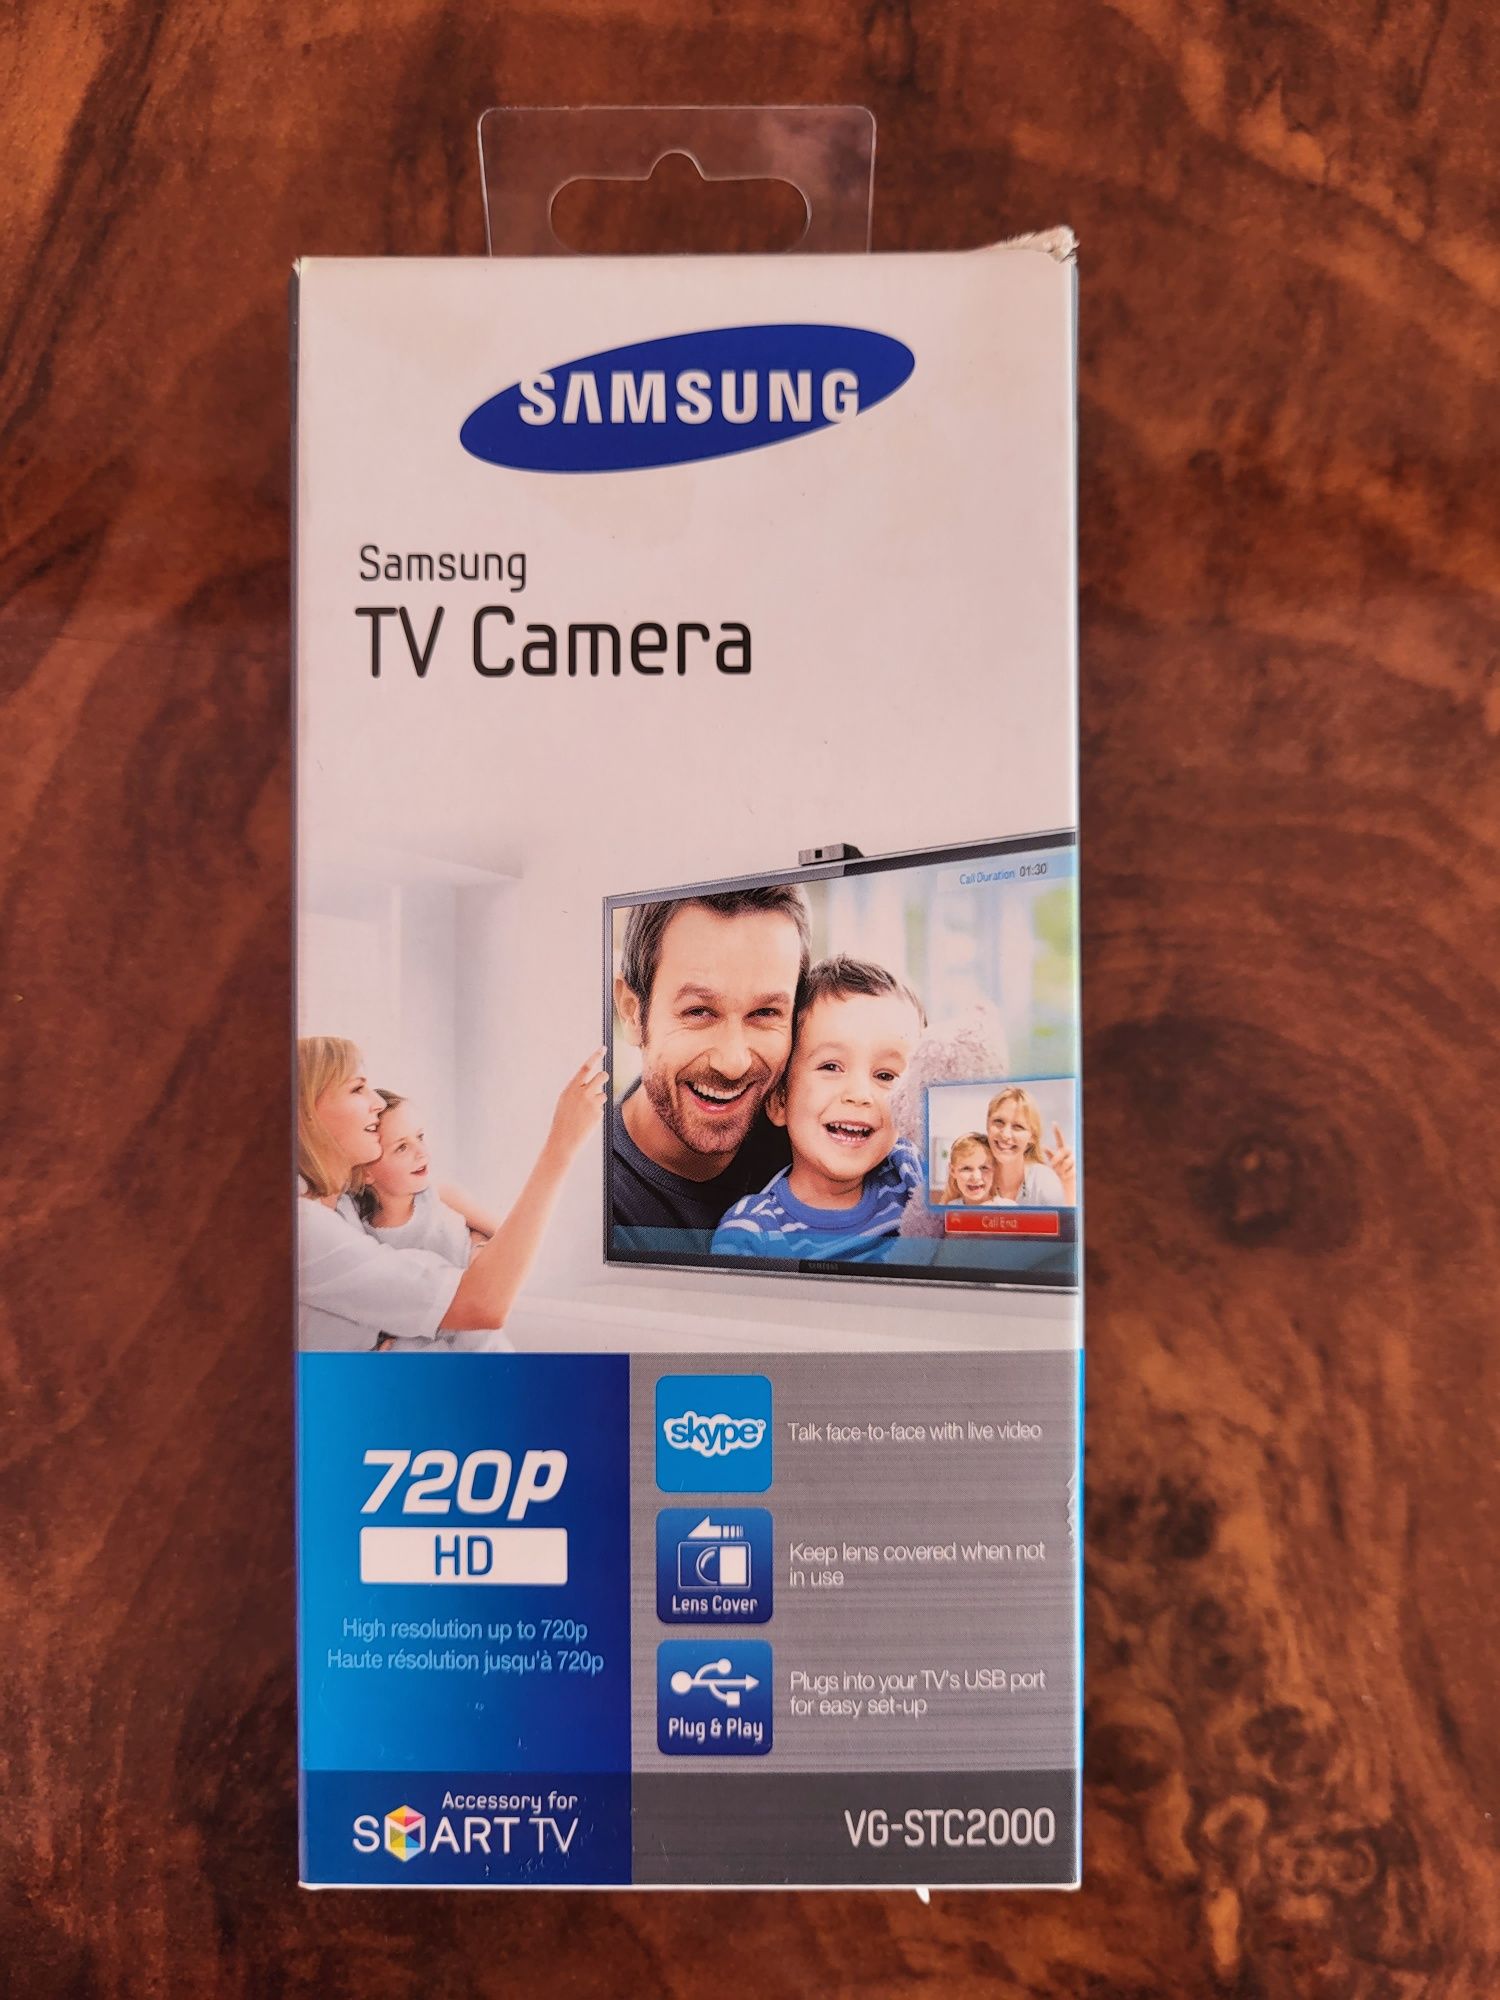 Sumsung TV Camera 720p HD